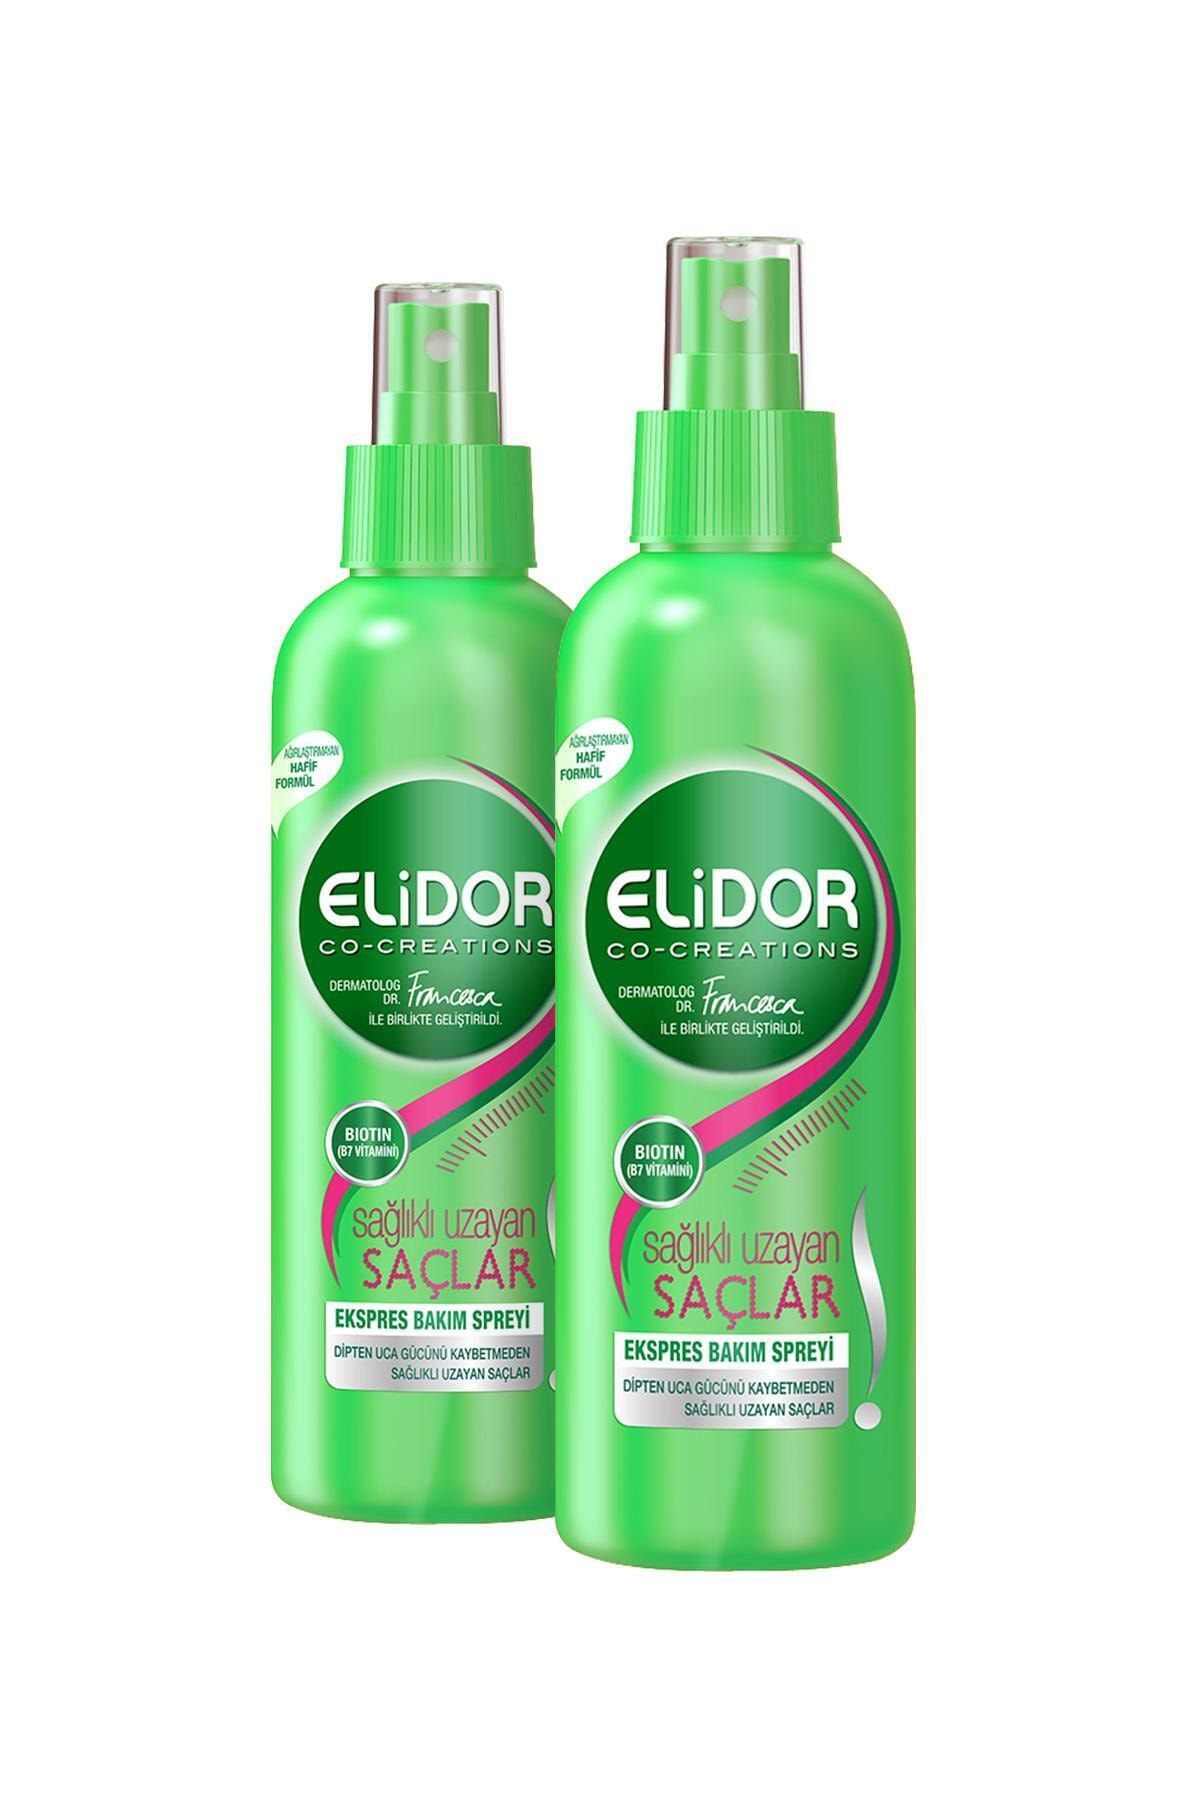 Elidor Sağlıklı Uzayan Saçlar Sıvı Saç Kremi 210 ml x2